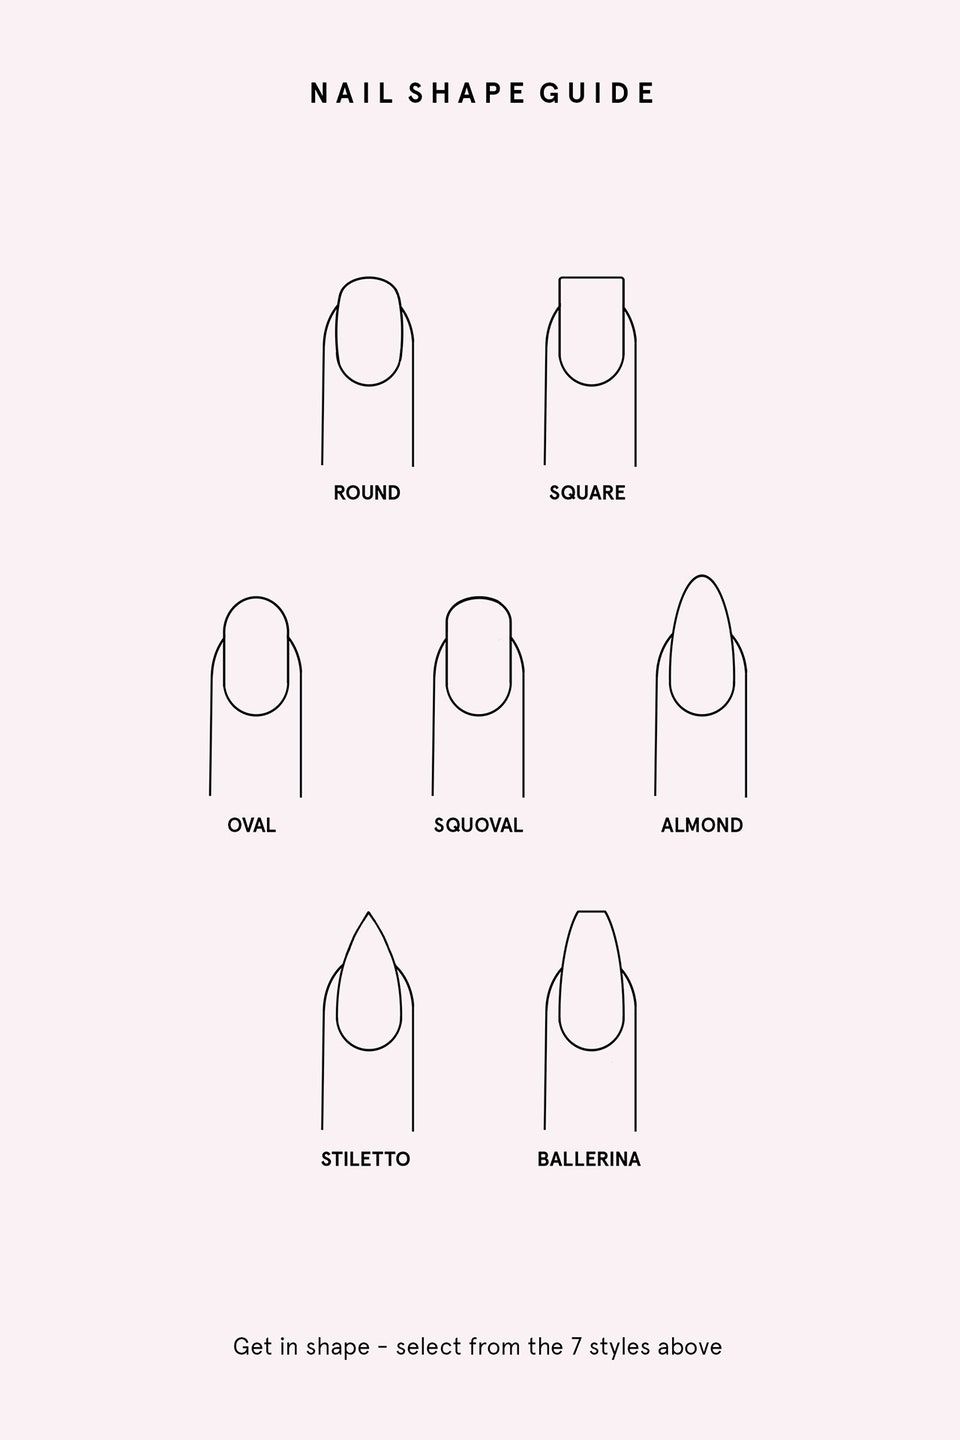 Идеальная форма ногтей. как сделать красивую форму ногтей? :: syl.ru